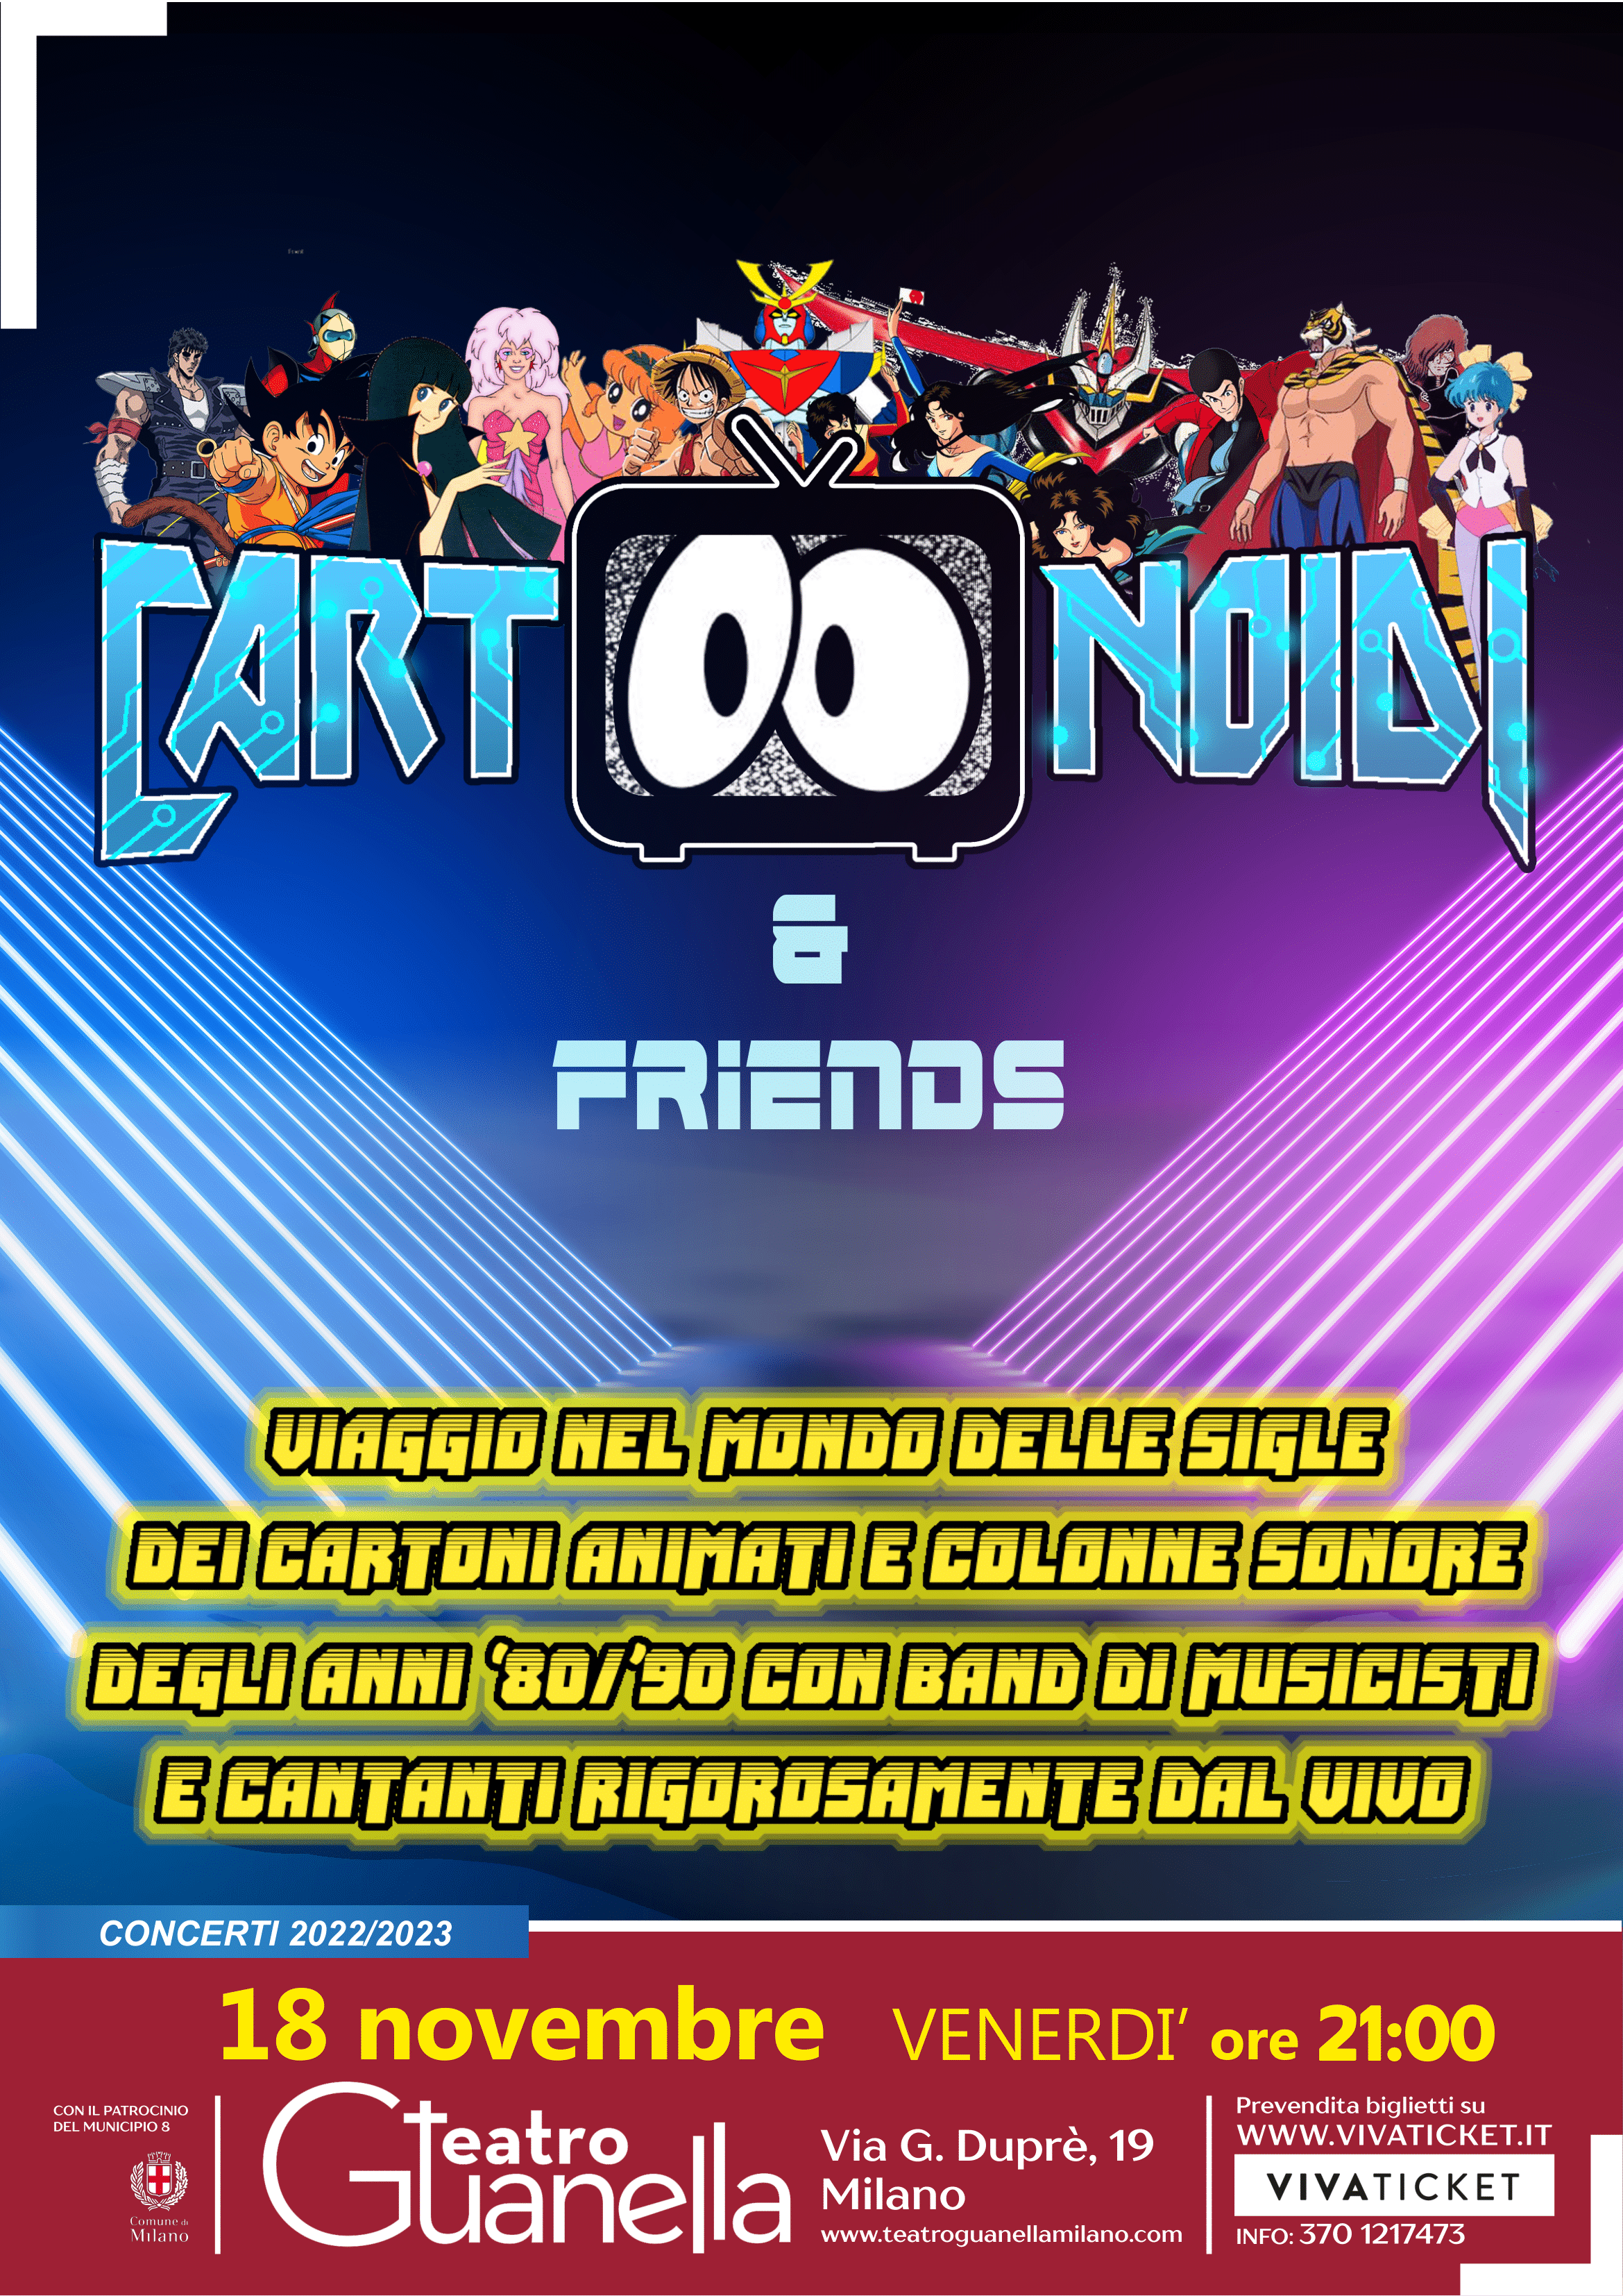 TRIBUTO A CARTONI E FILM ANNI ’80-’90 – Cartoonoidi & Friends